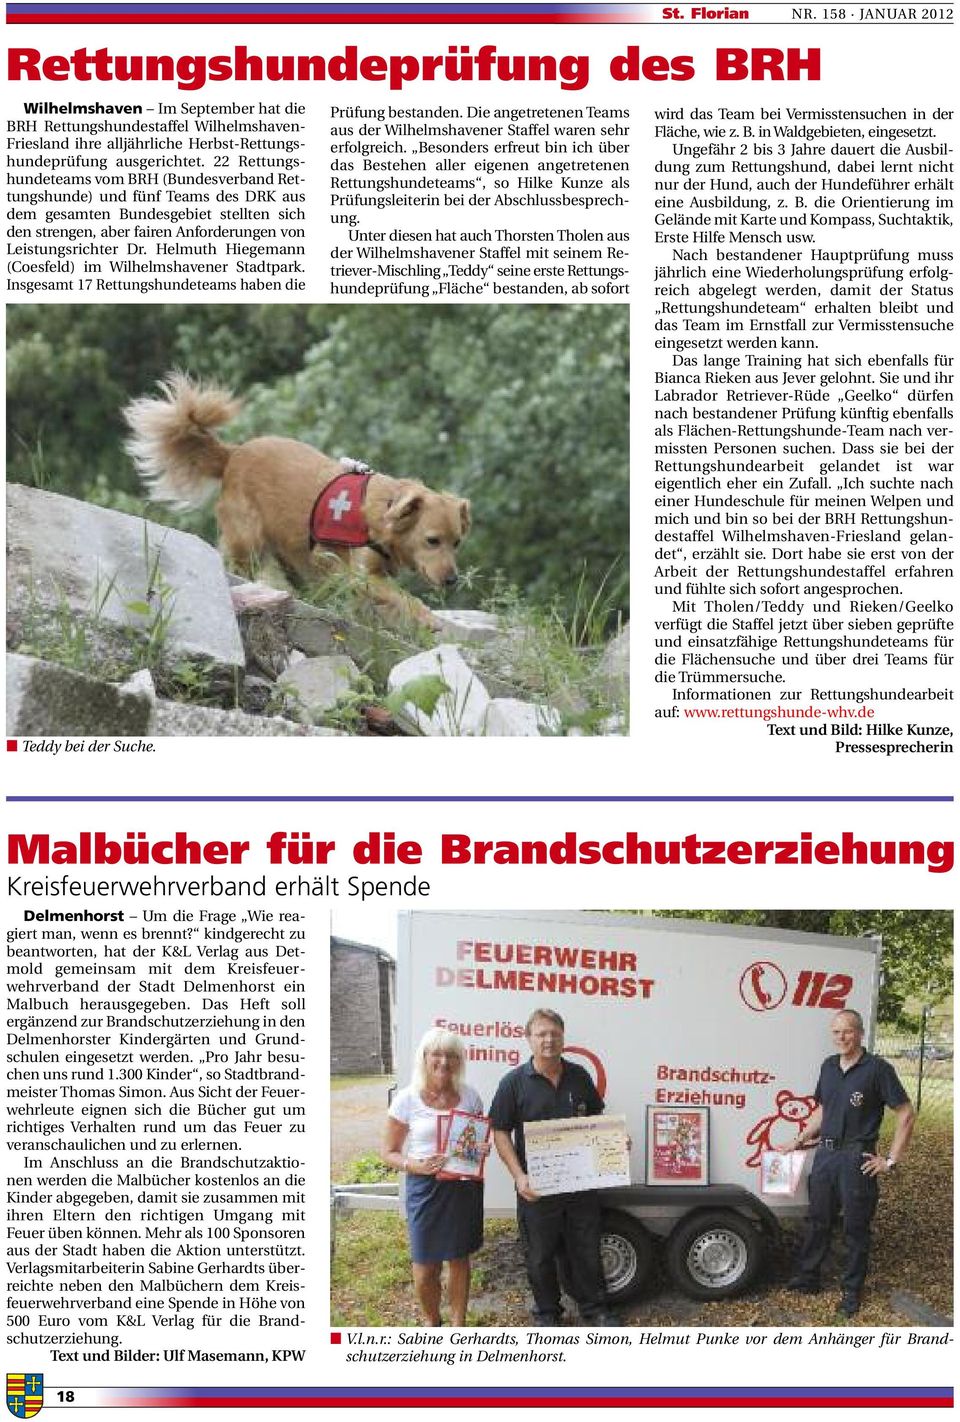 Helmuth Hiegemann (Coesfeld) im Wilhelmshavener Stadtpark. Insgesamt 17 Rettungshundeteams haben die Teddy bei der Suche. Prüfung bestanden.